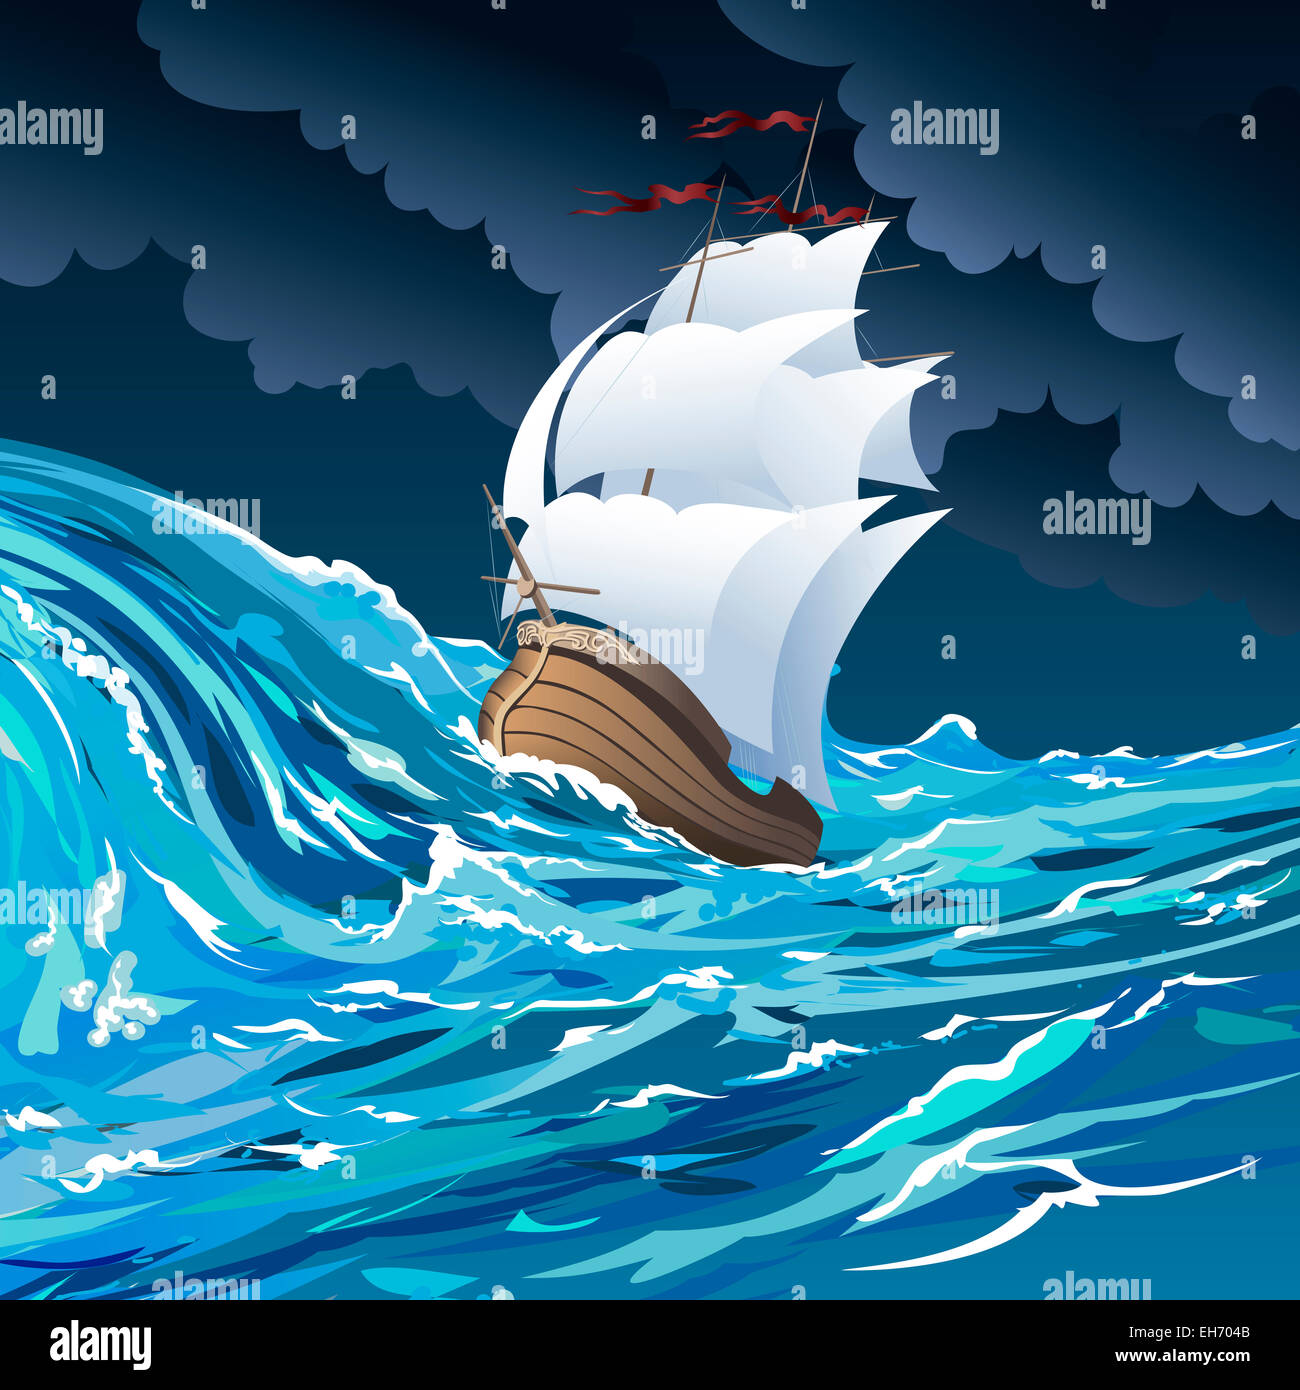 Ilustración con barco de vela a la deriva en el océano tormentoso contra nublado cielo nocturno dibujado en estilo de dibujos animados Foto de stock